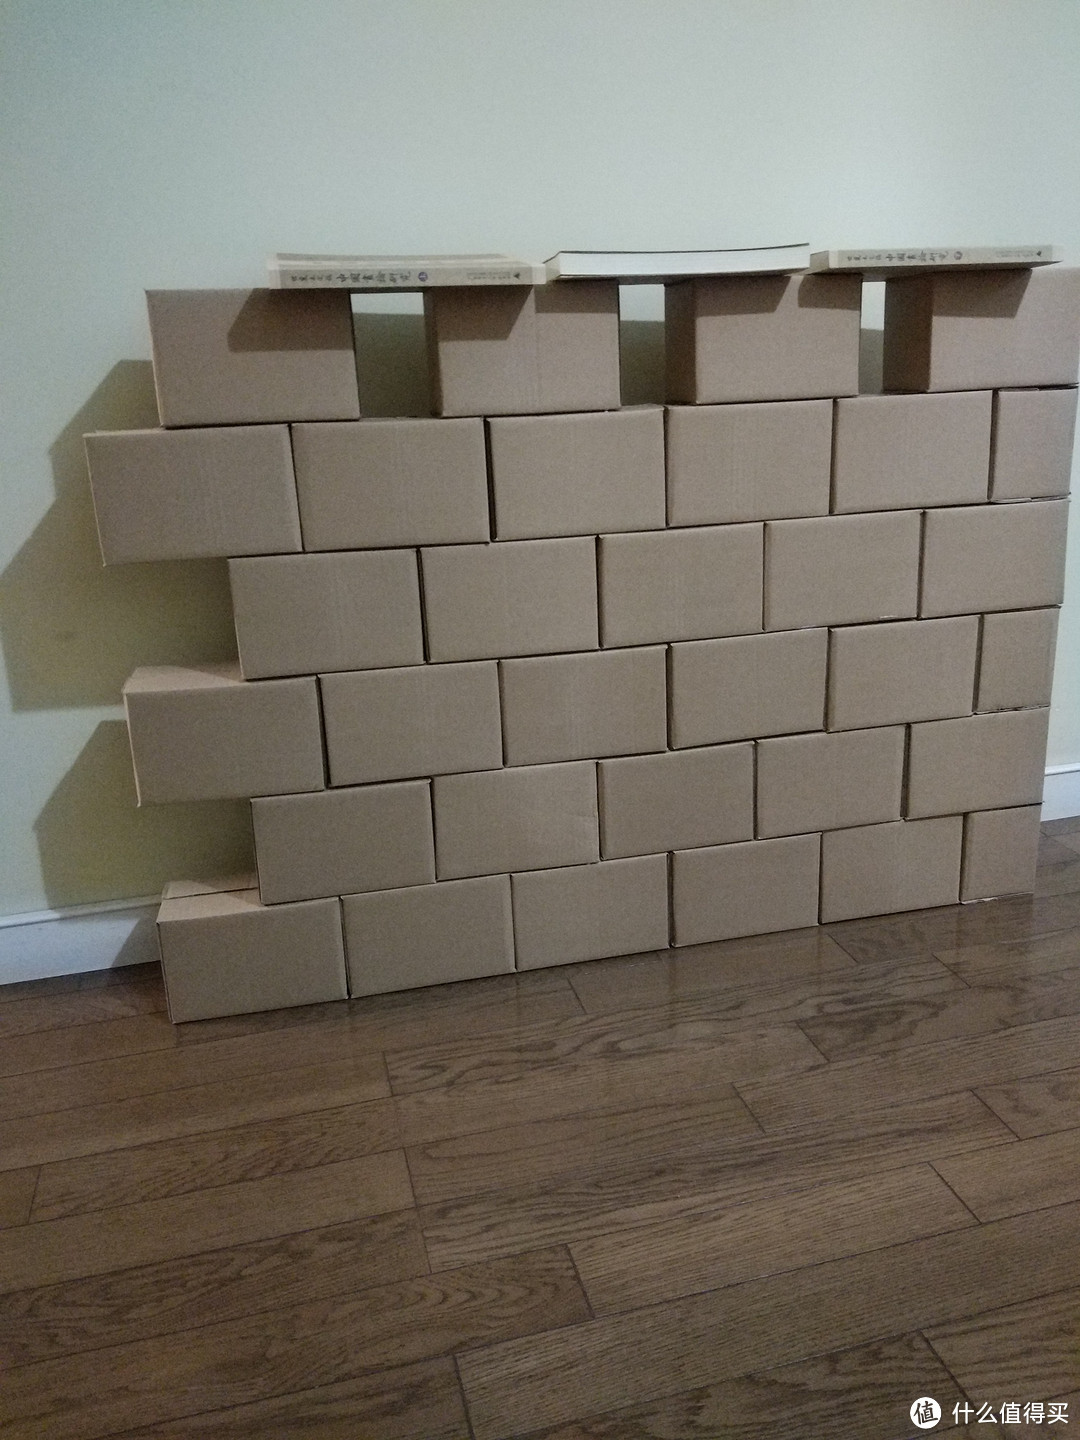 六个夜晚，打造一段纸盒长城